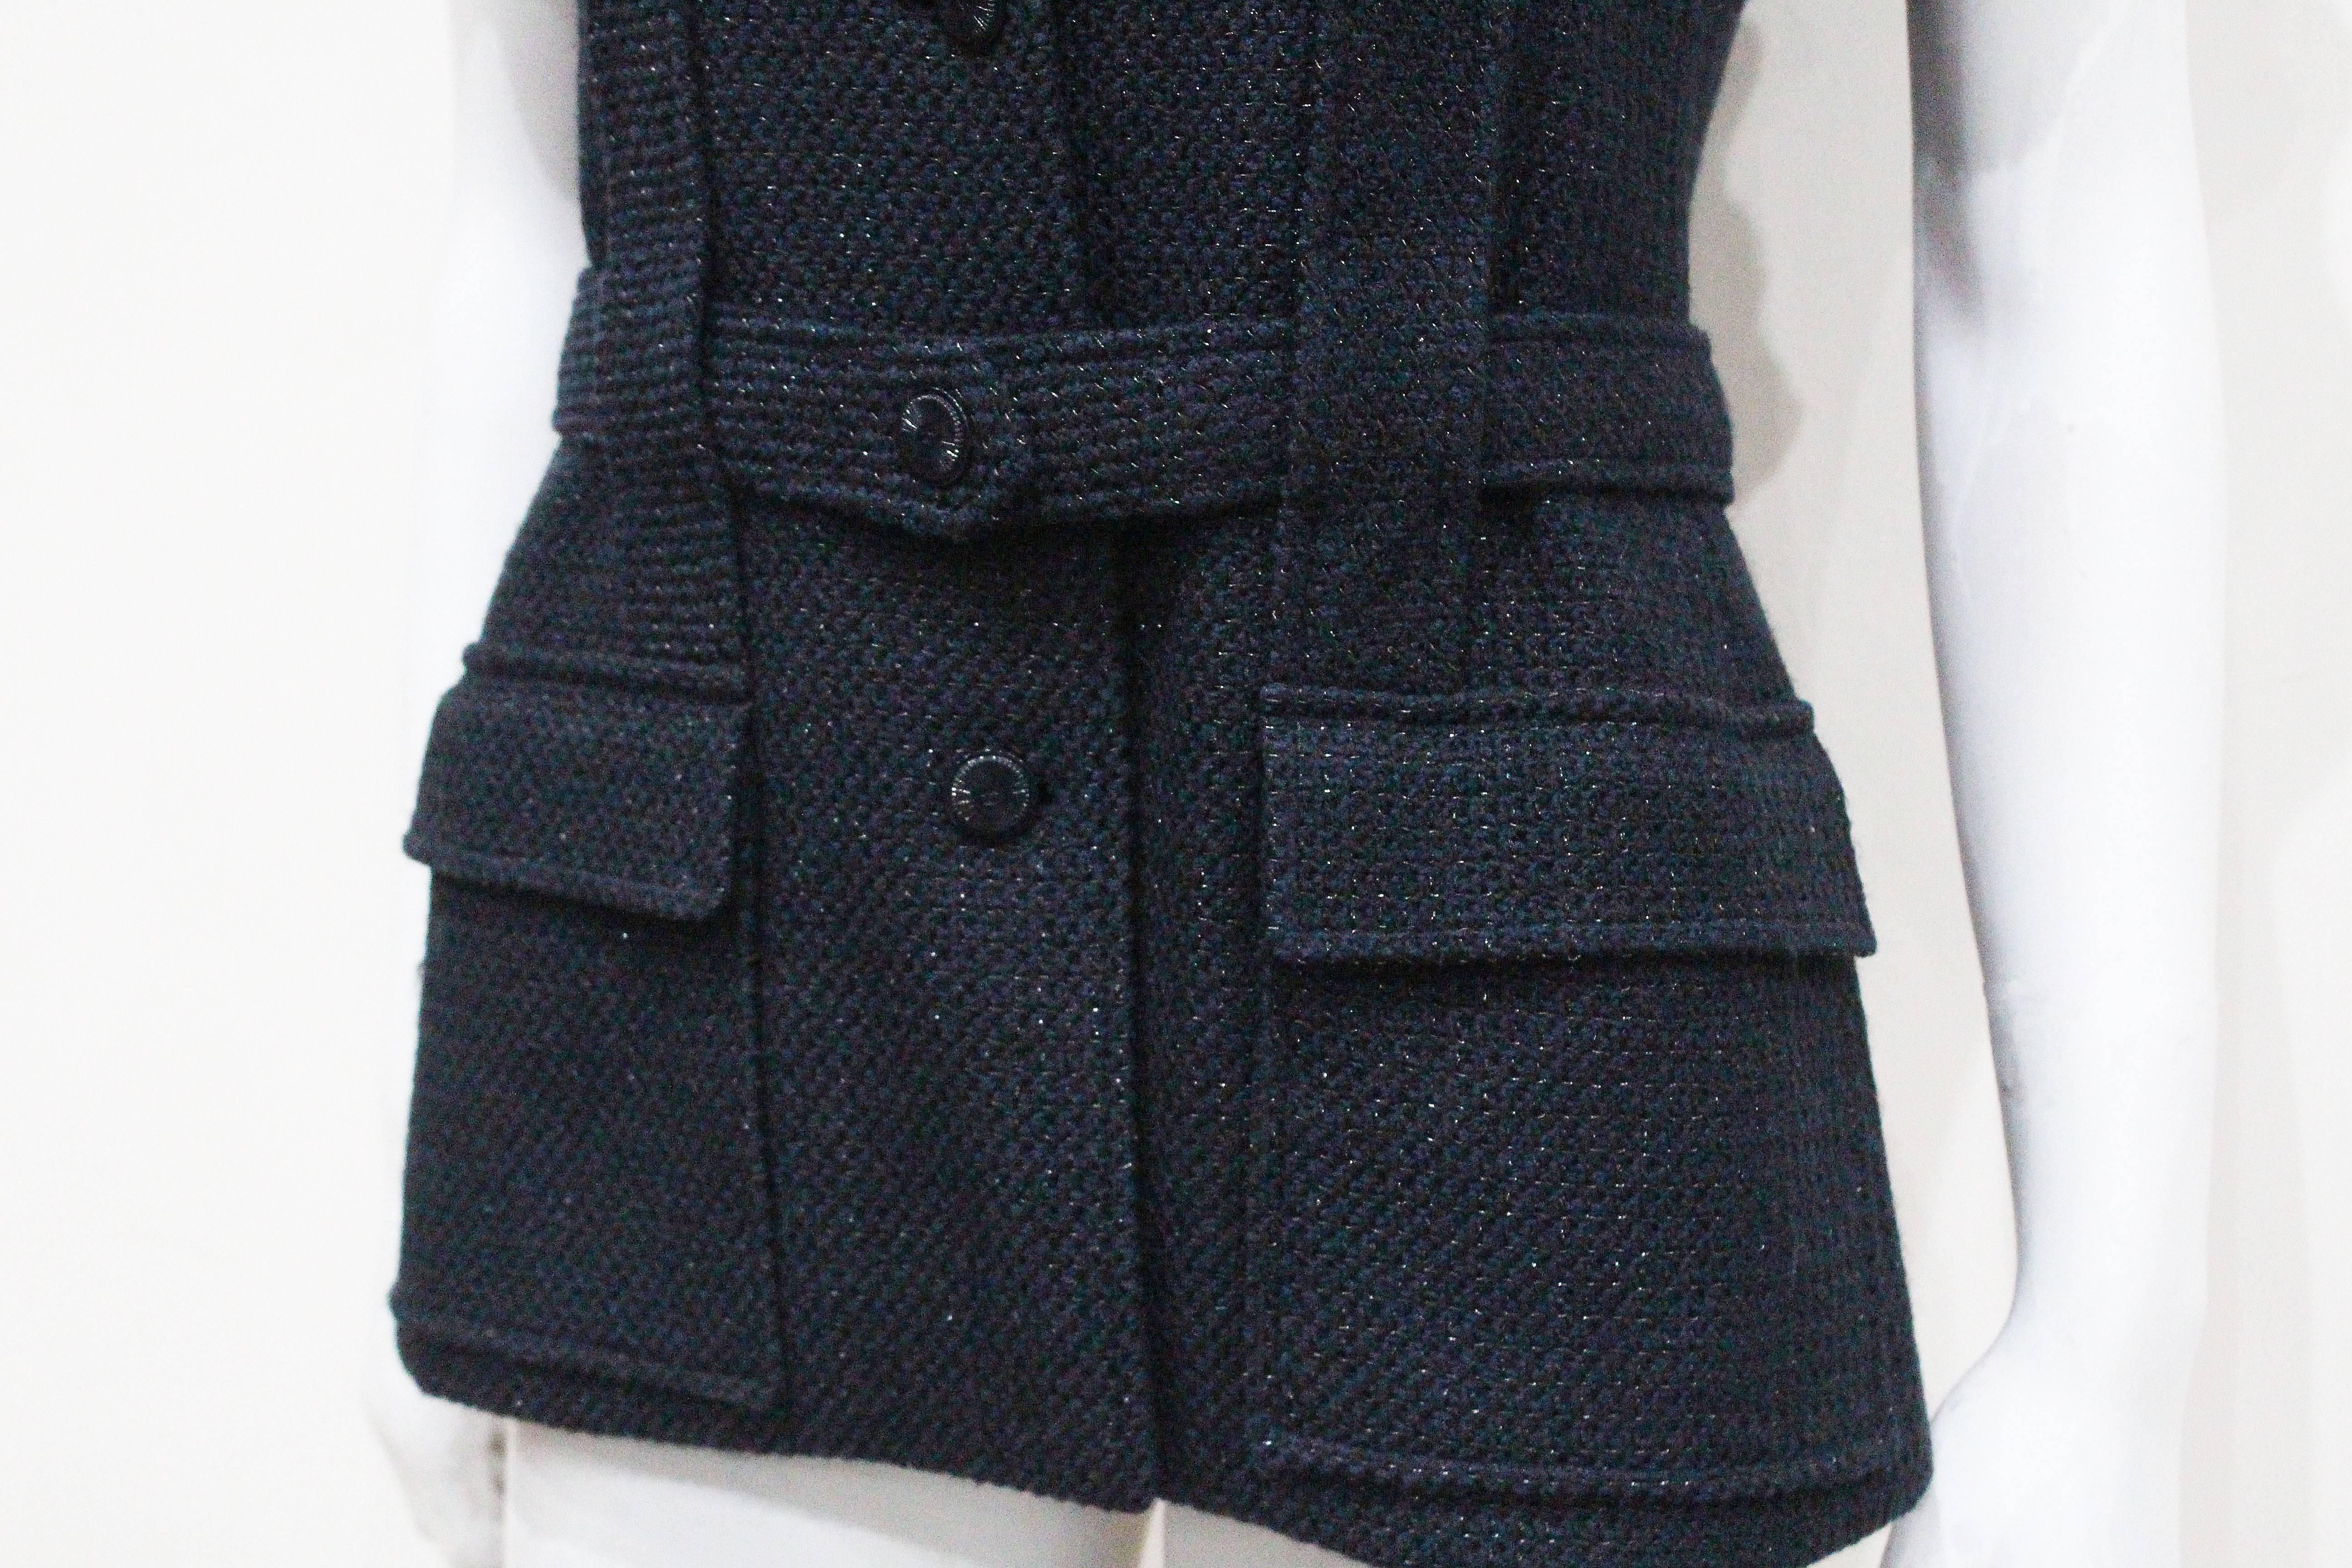 Black Chanel marine blue tweed short sleeved belted jacket, c. 2001